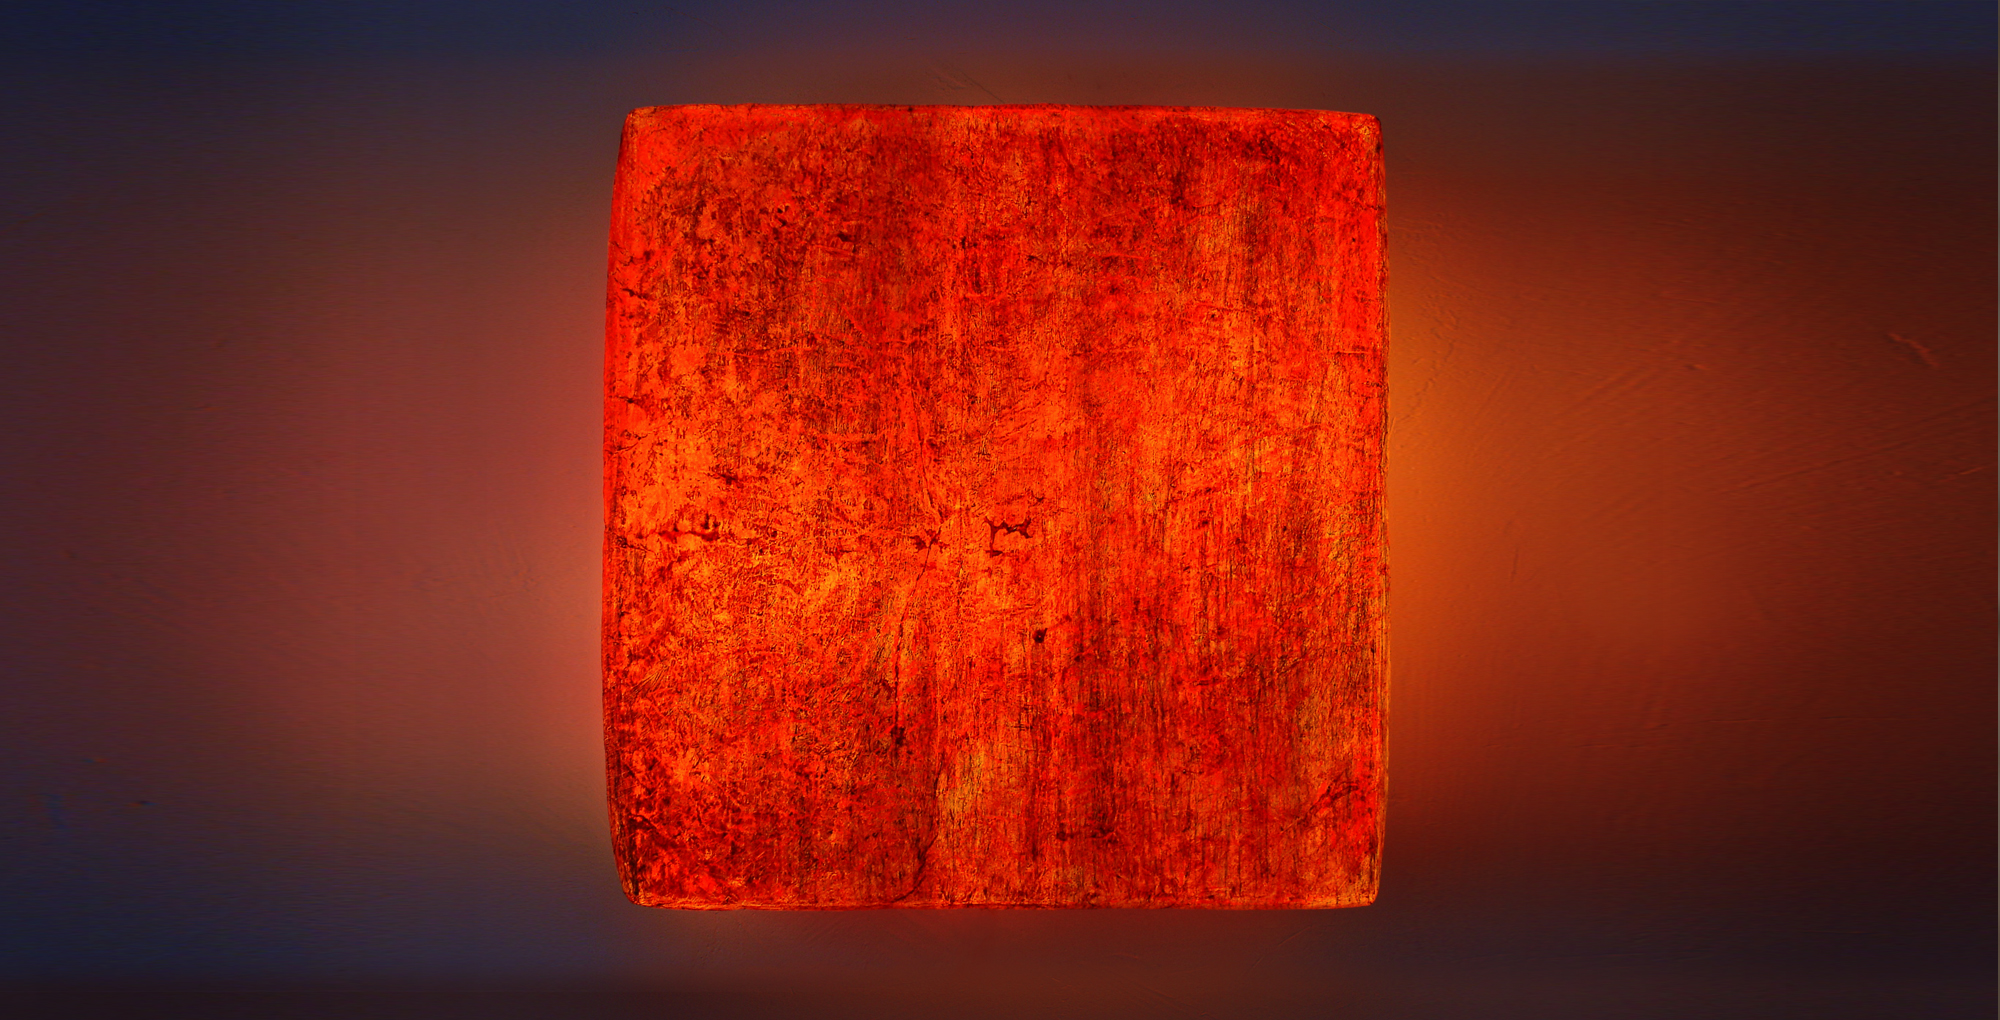 Leuchtobjekt - Ölfarbe auf Papier, 70 x 70 x 20 cm I 2015